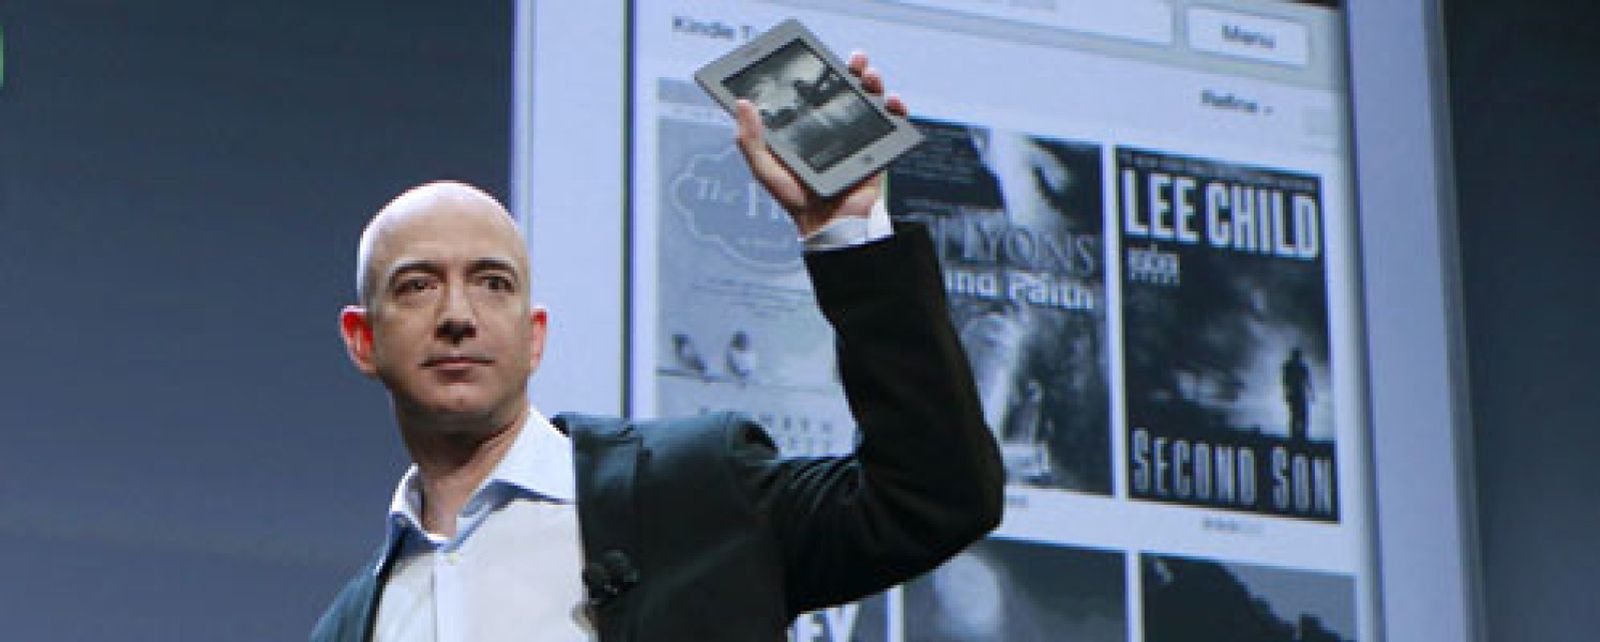 Foto: Amazon destapa su secreto mejor guardado: el Kindle arrasa en ventas (1 millón semanal)